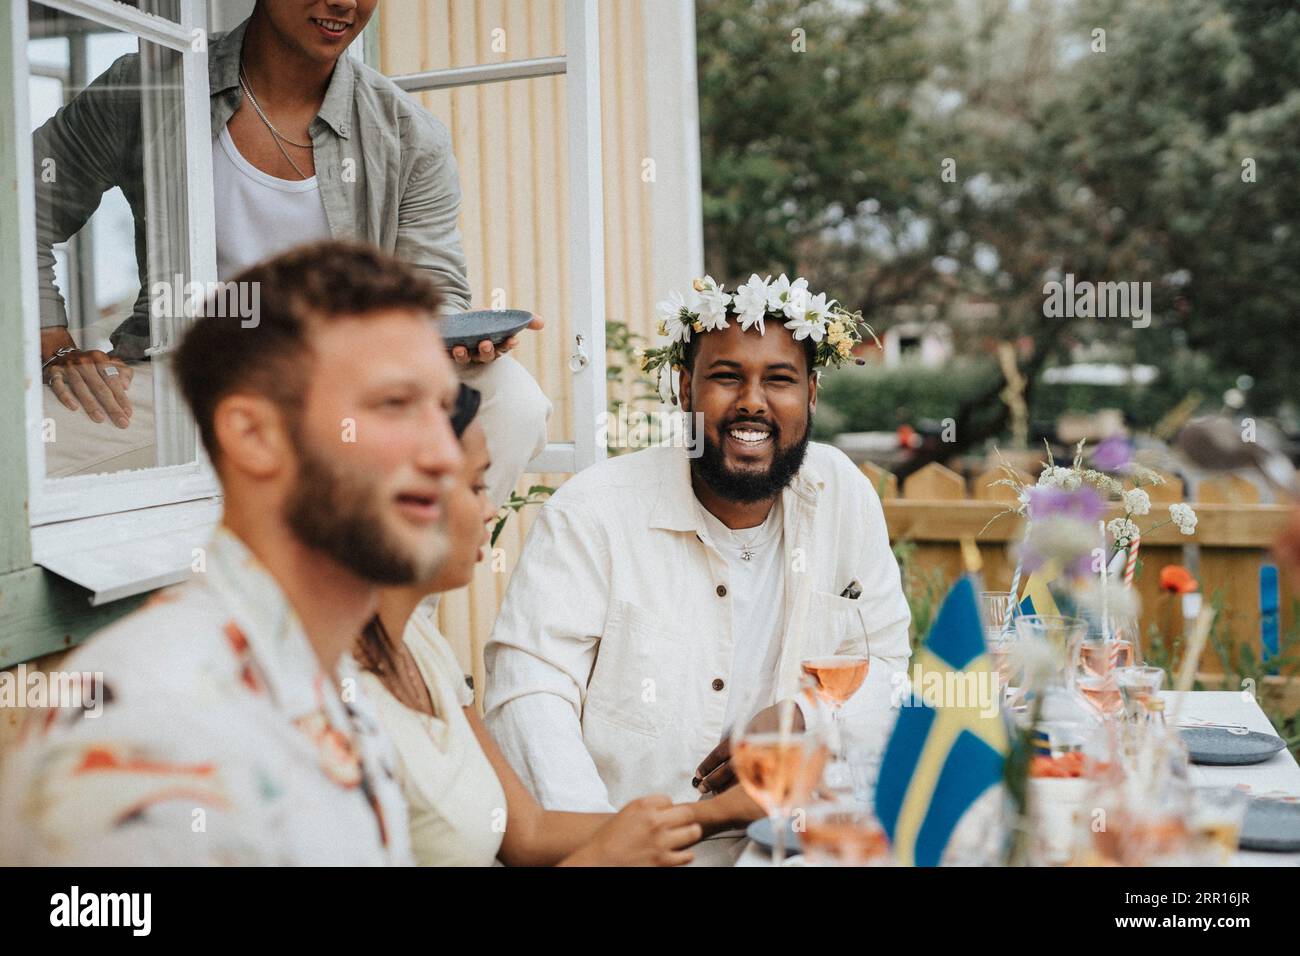 Porträt eines glücklichen jungen Mannes, der eine Diadem trägt, während er mit Freunden während einer Dinnerparty im Café sitzt Stockfoto